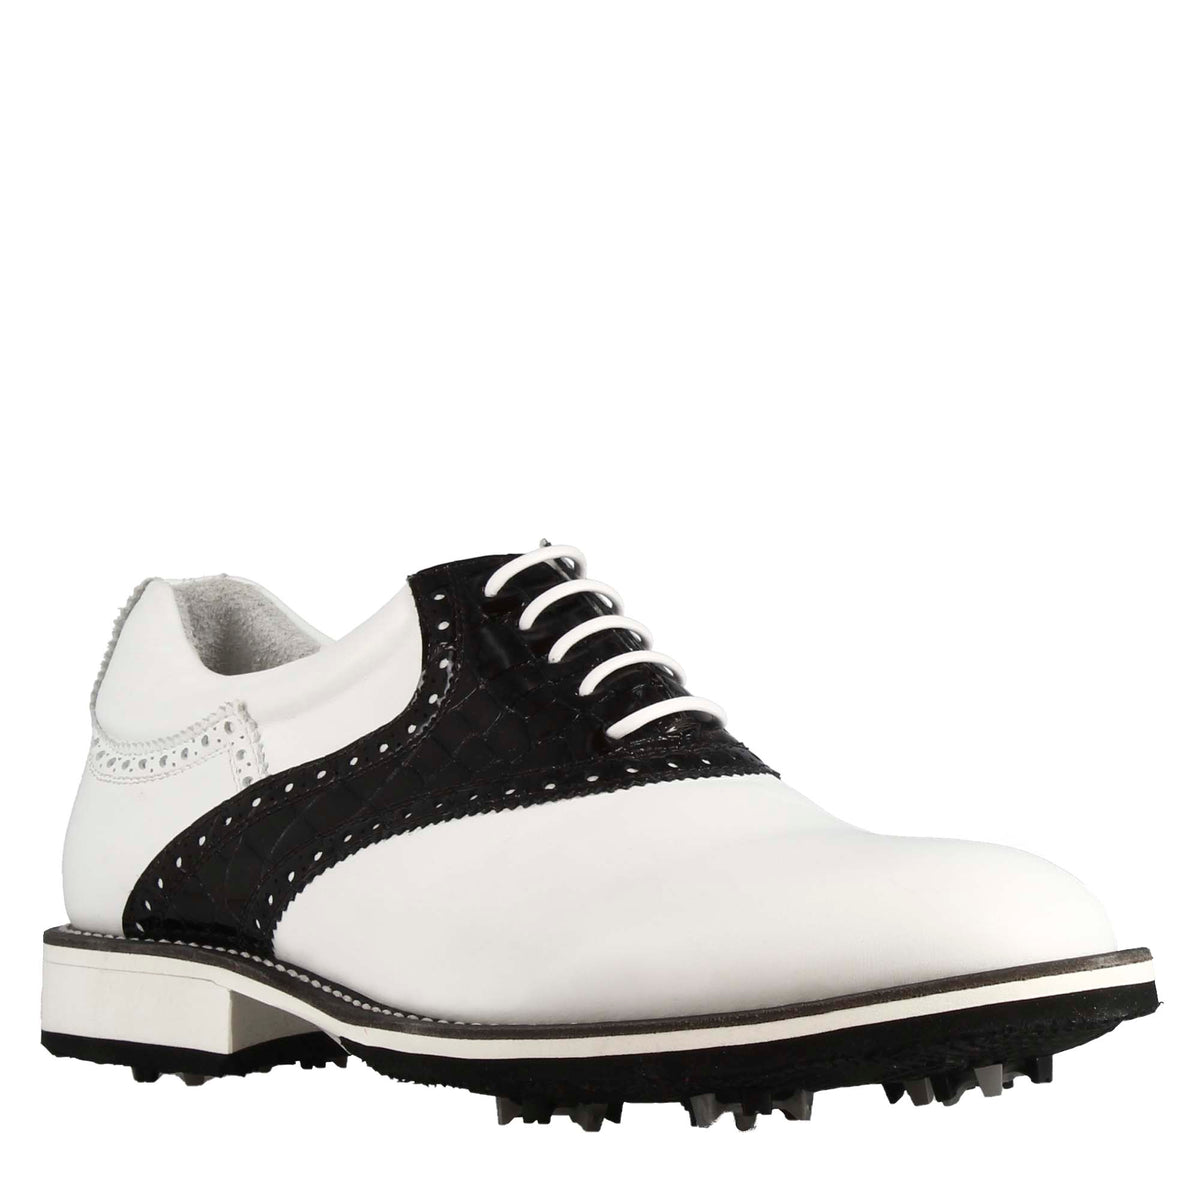 Handgefertigter Herren-Golfschuh aus weißem Leder mit schwarzen Lederdetails